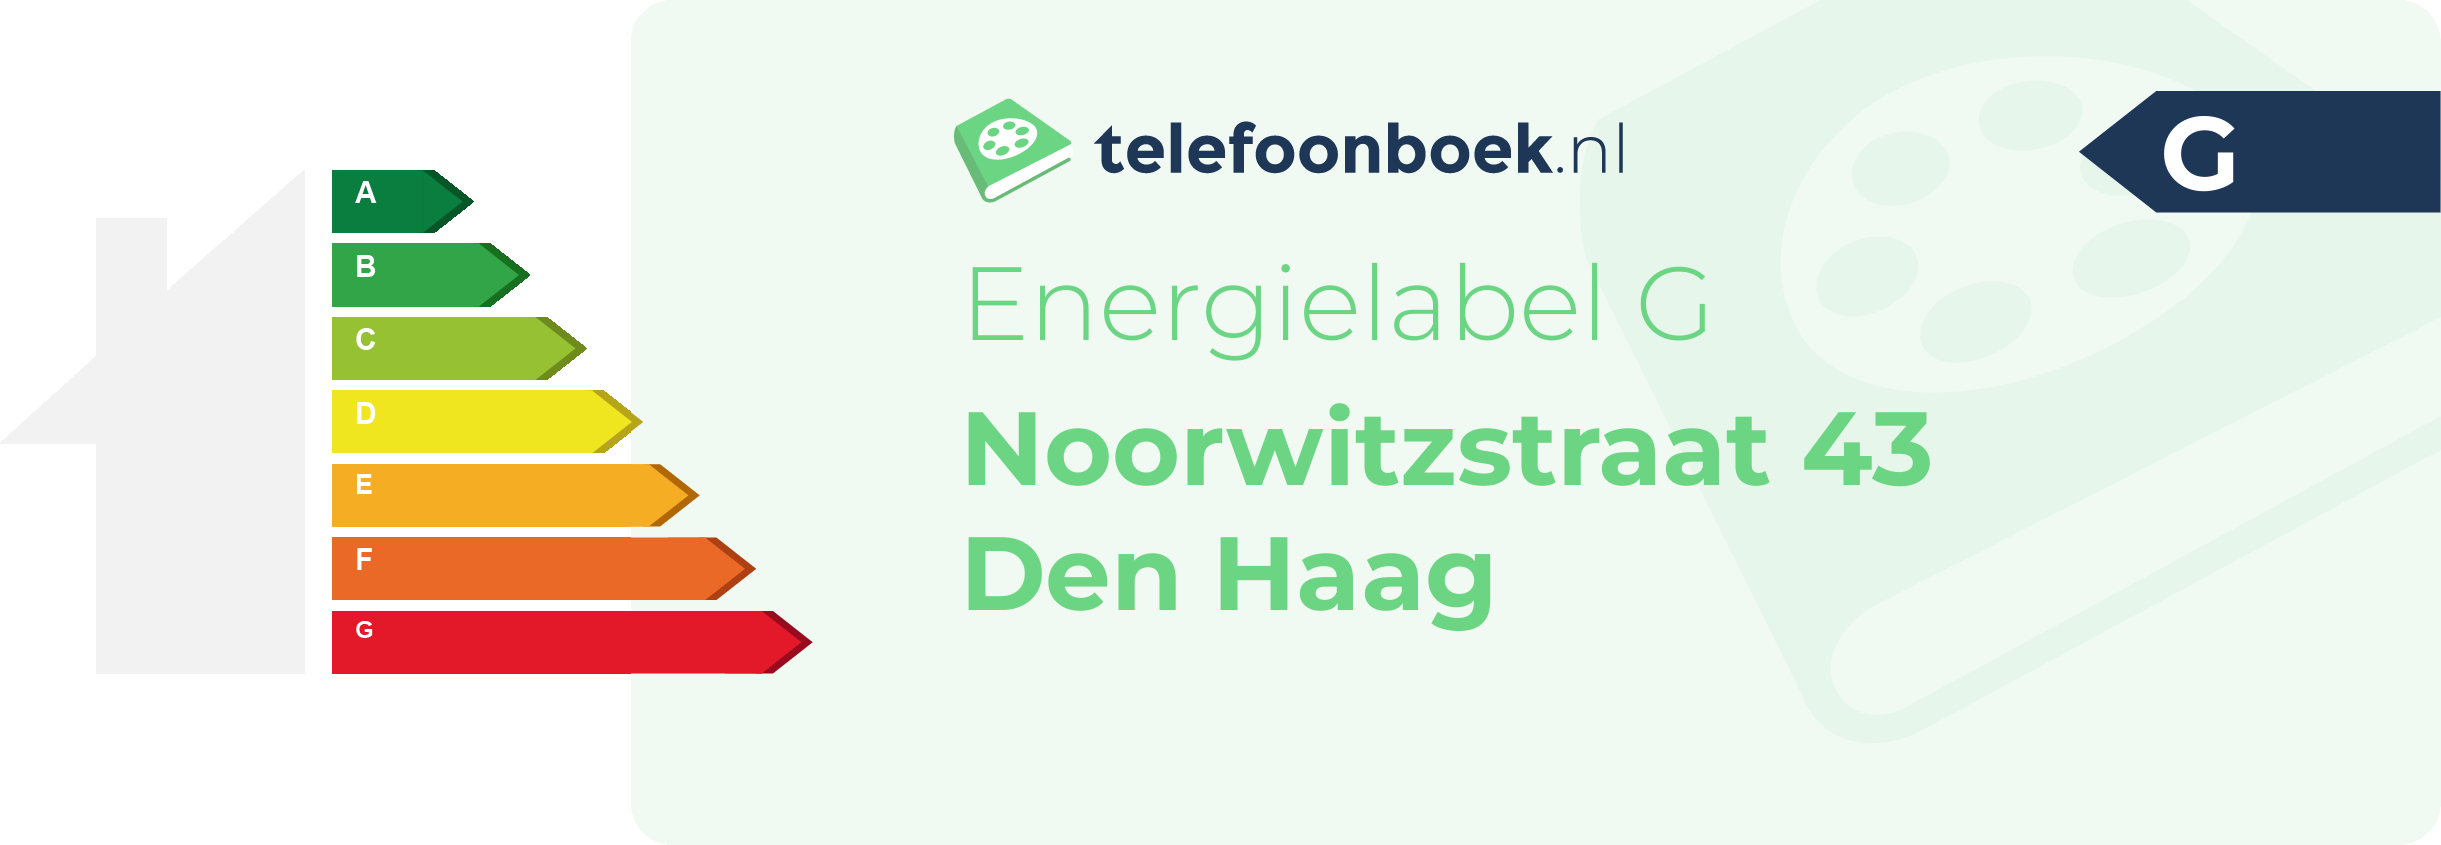 Energielabel Noorwitzstraat 43 Den Haag